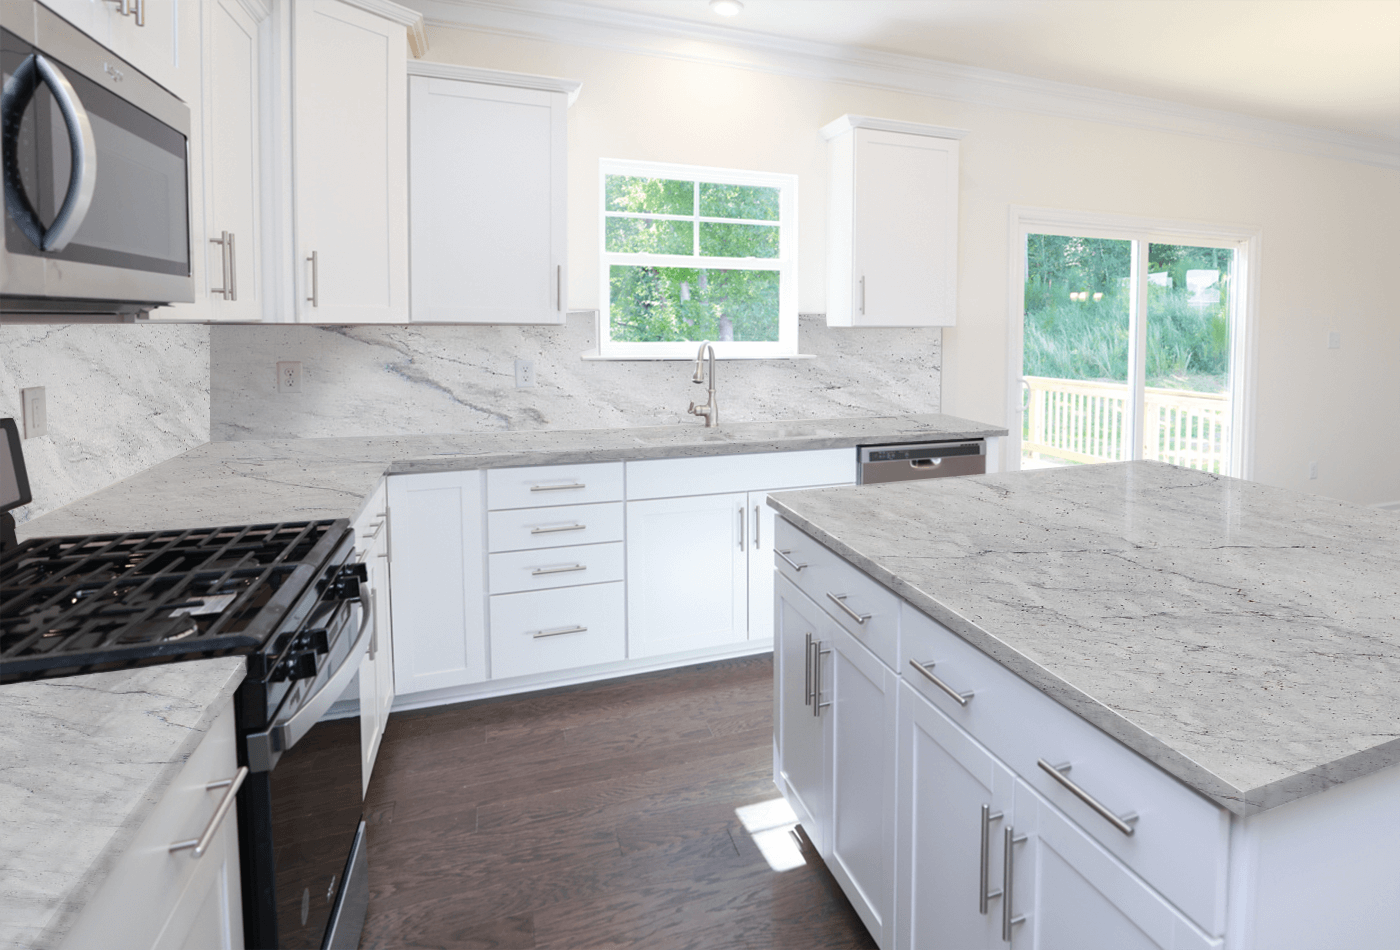 Ideas for a White Granite Kitchen Backsplash